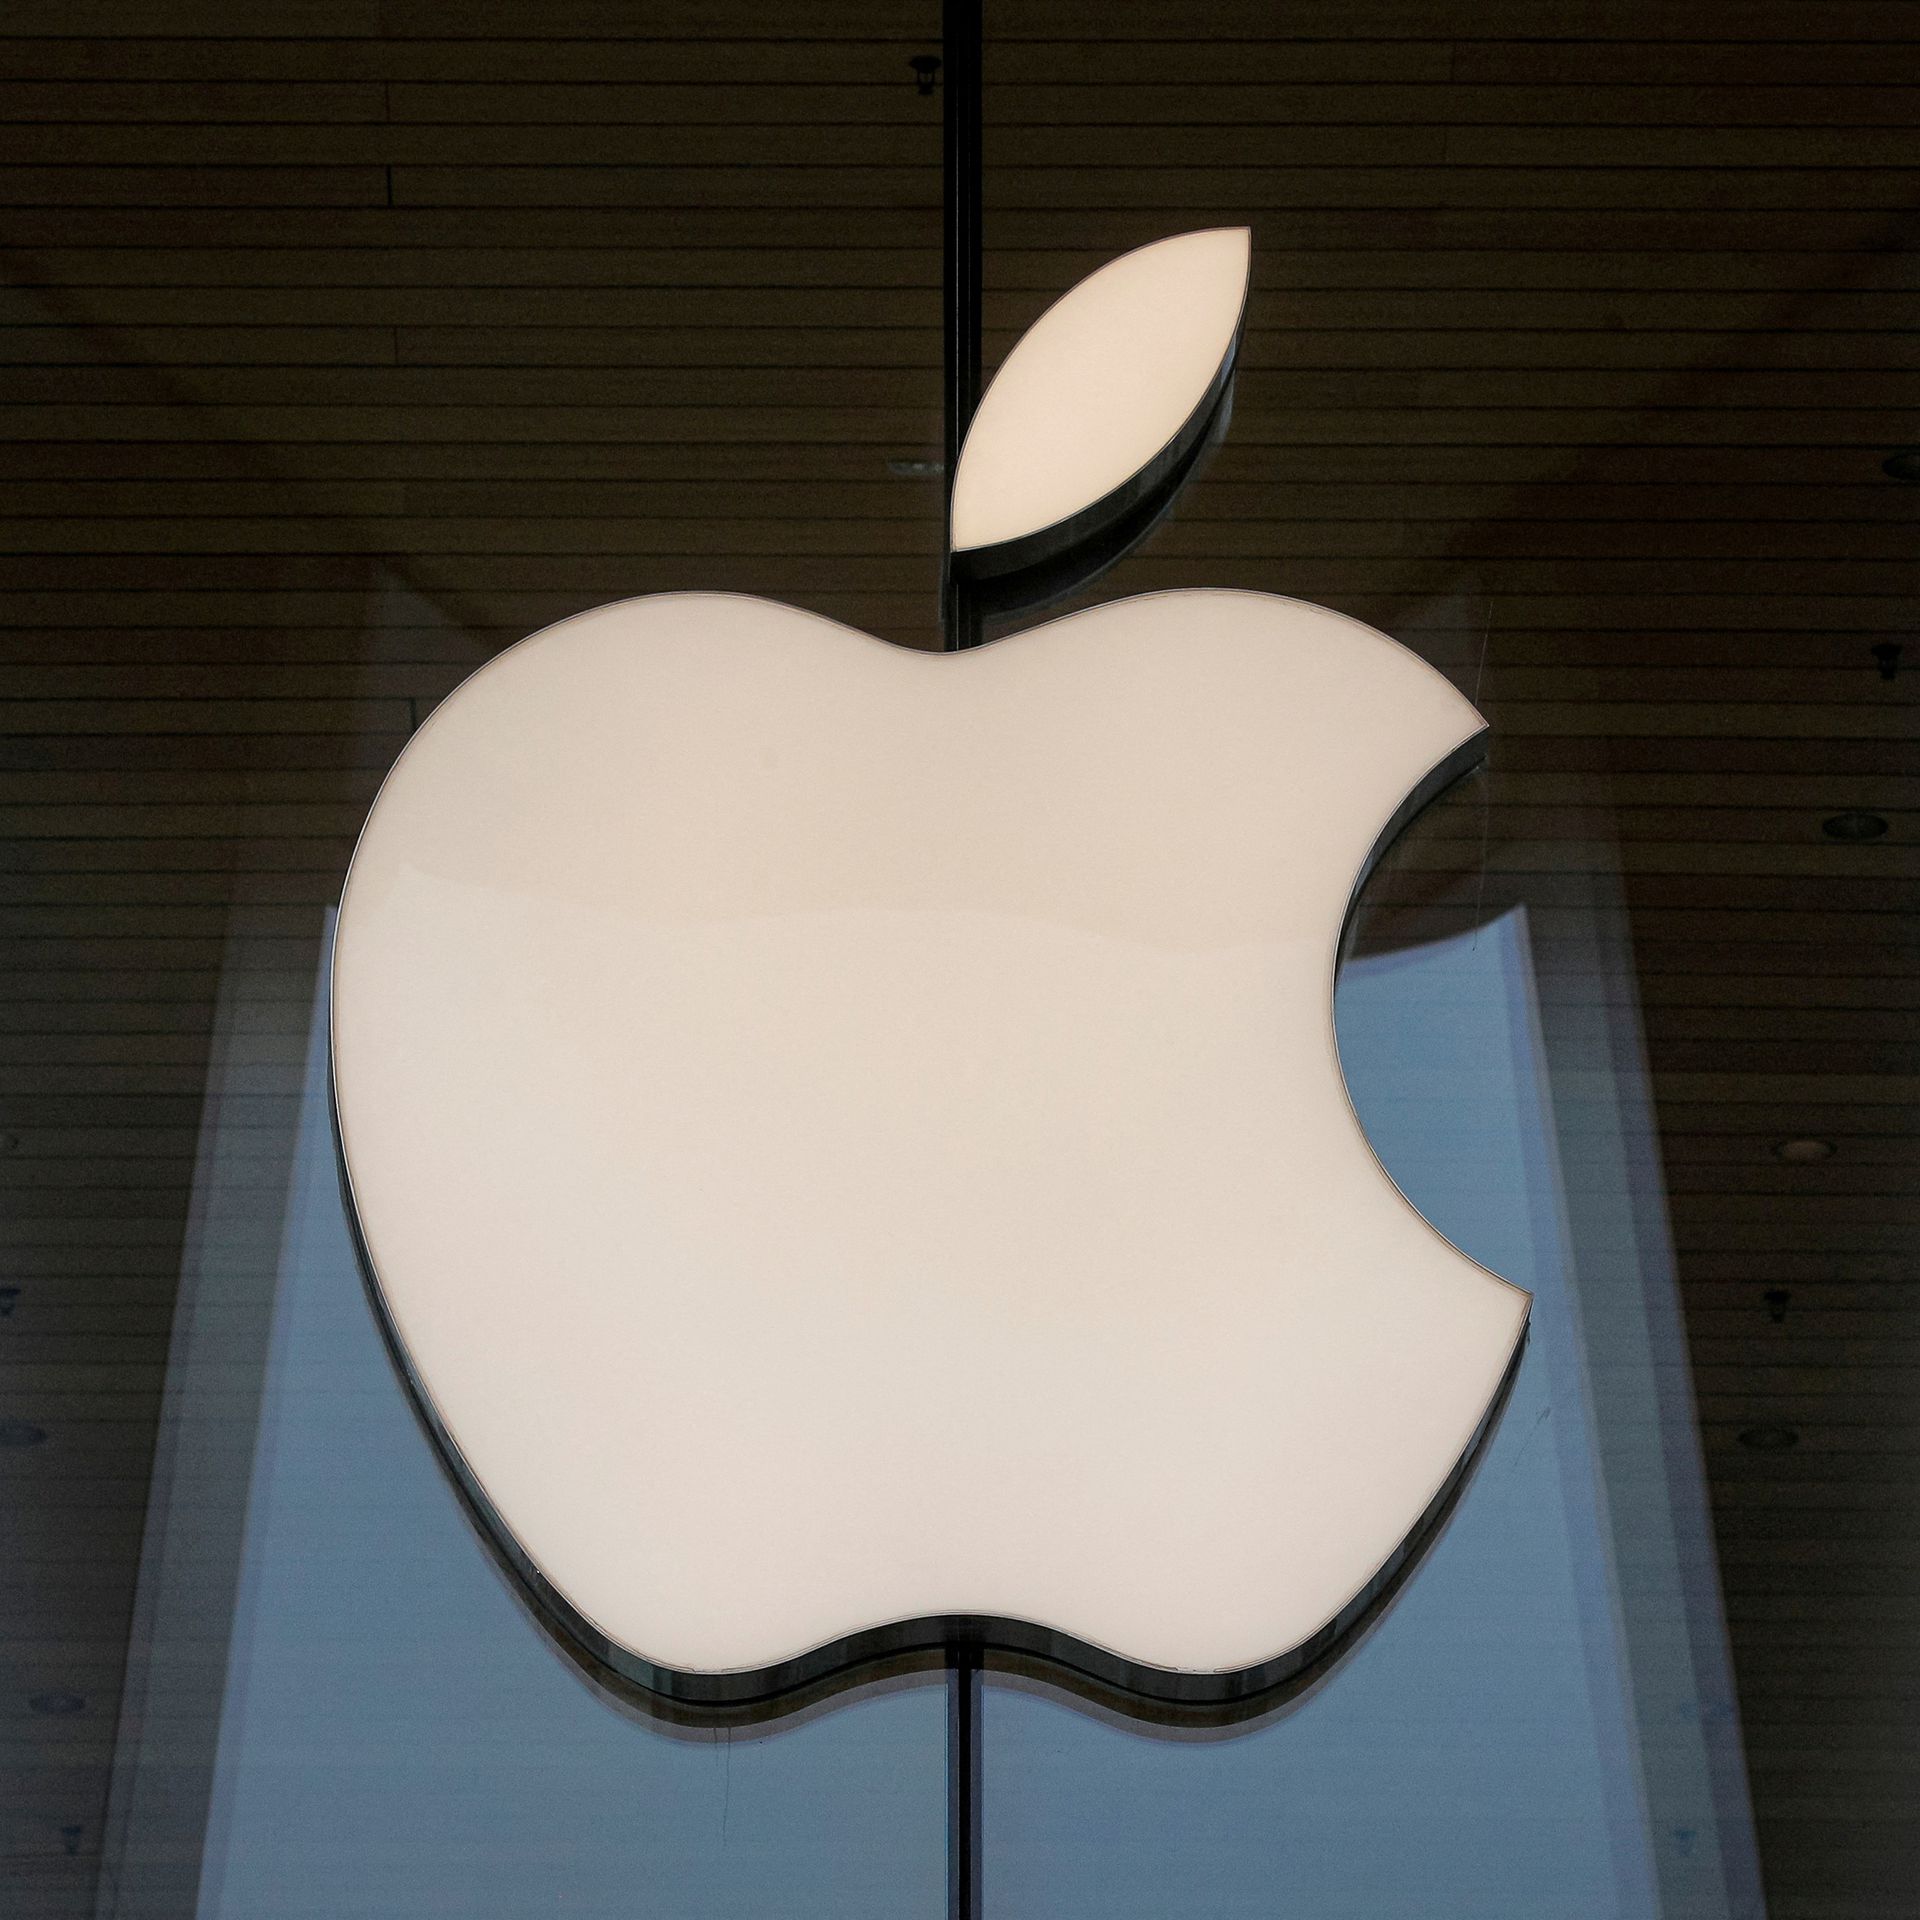 Apple çalışanı, şirketi 17 milyon dolardan dolandırdığını itiraf etti